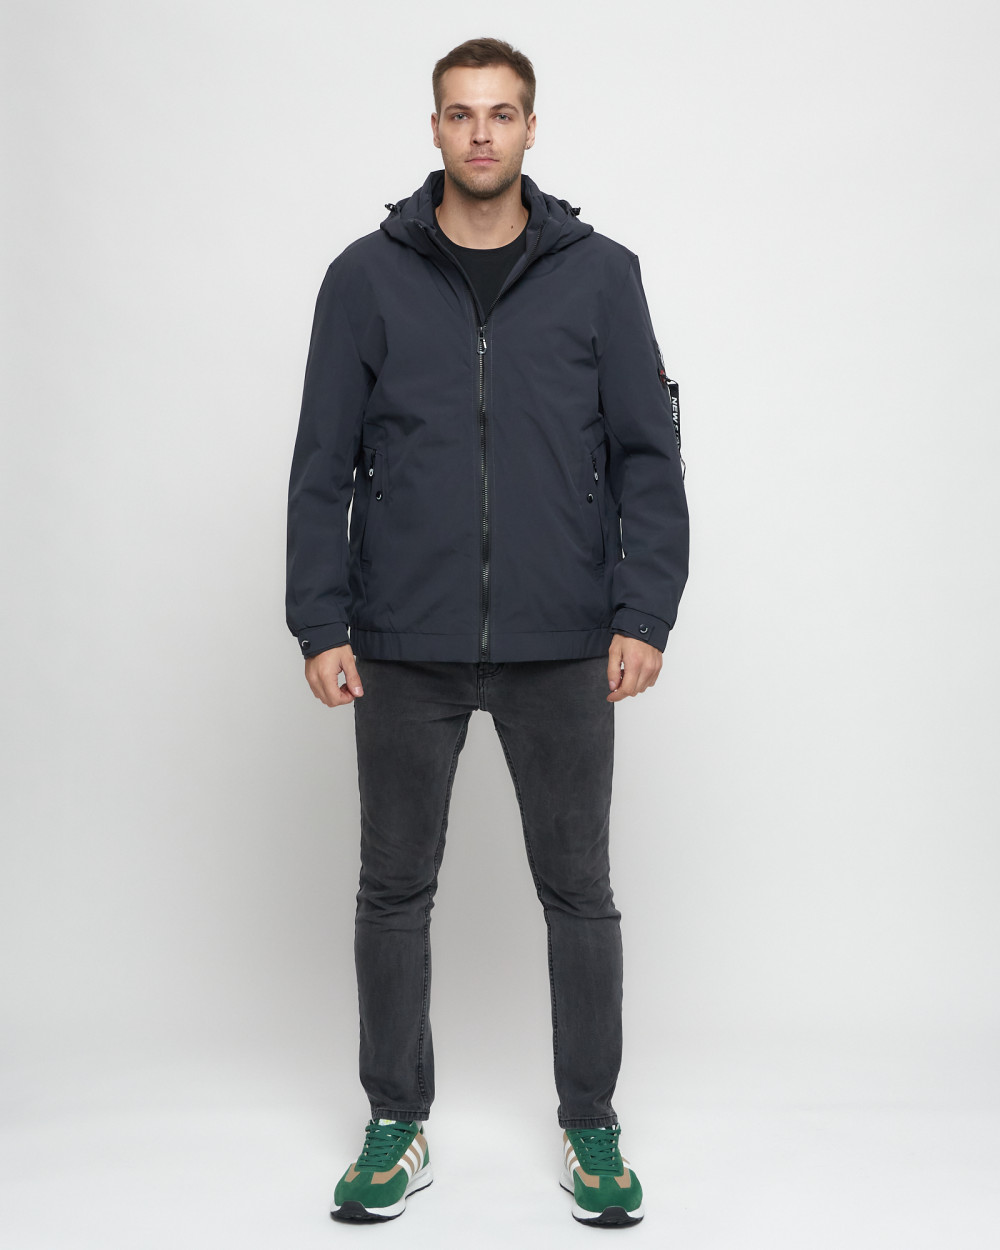 Купить оптом Куртка спортивная мужская на резинке большого размера темно-серого цвета 88657TC в Екатеринбурге